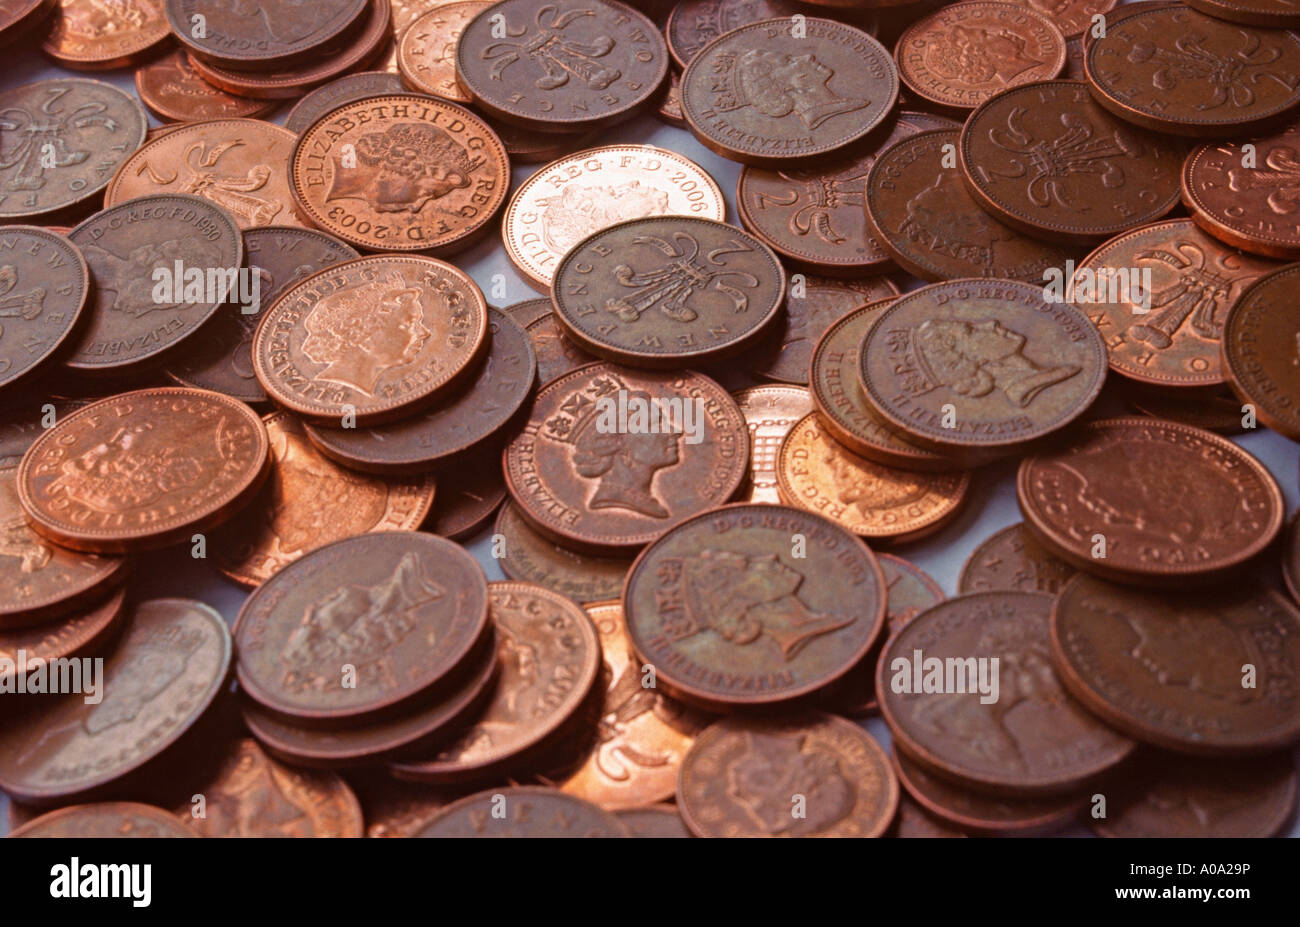 British coins Stock Photo